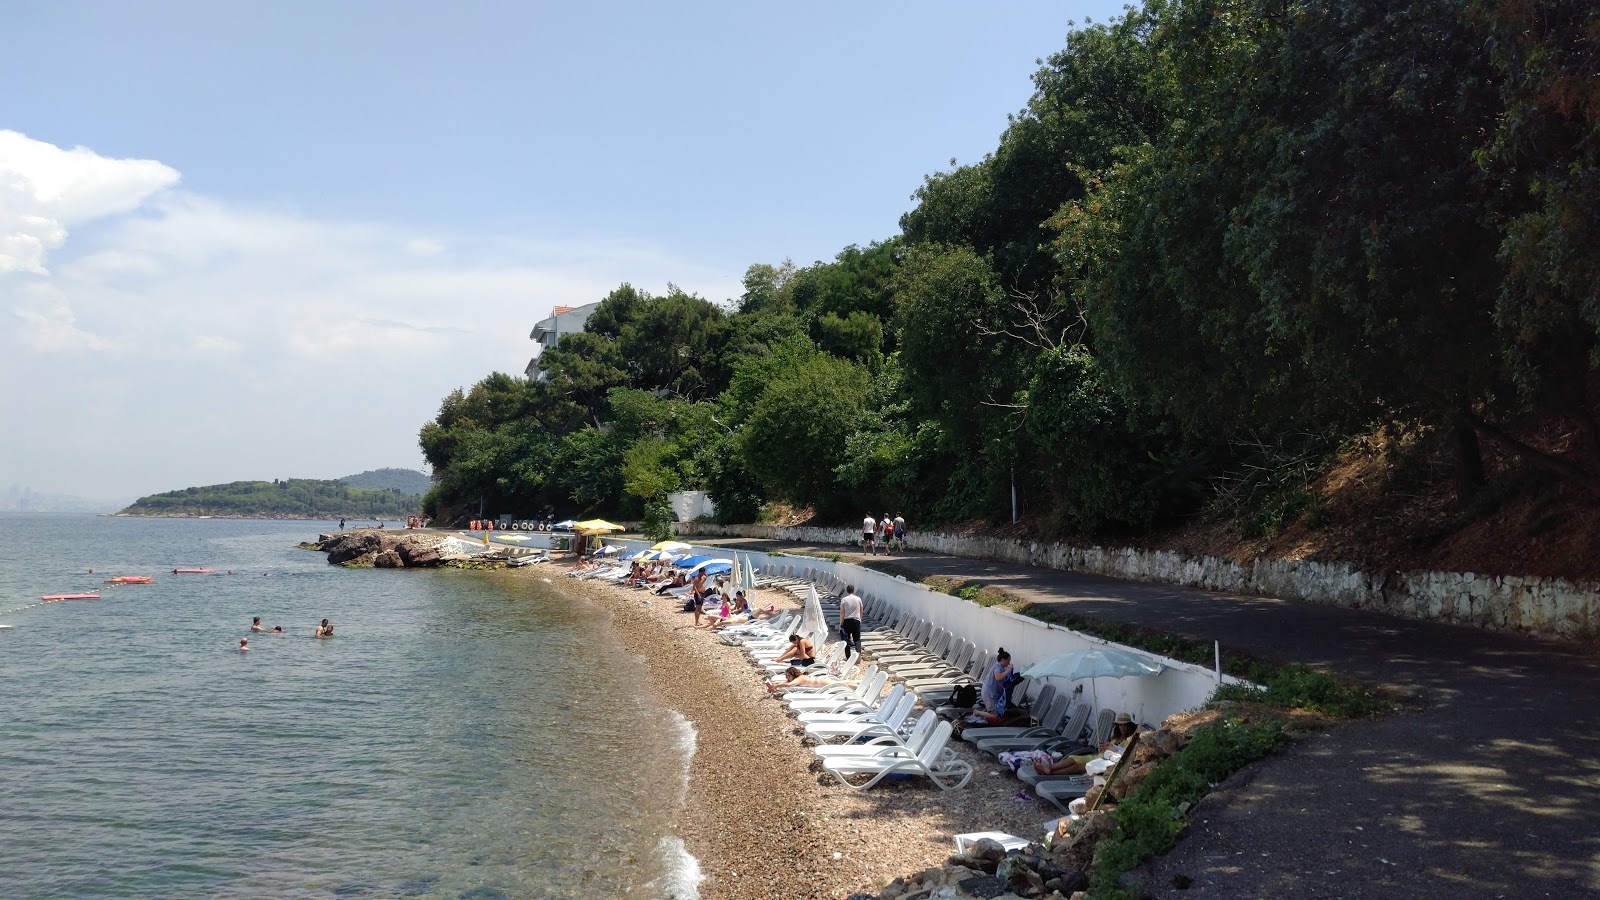 Fotografija Camakya Aile Plaji z sivi kamenček površino